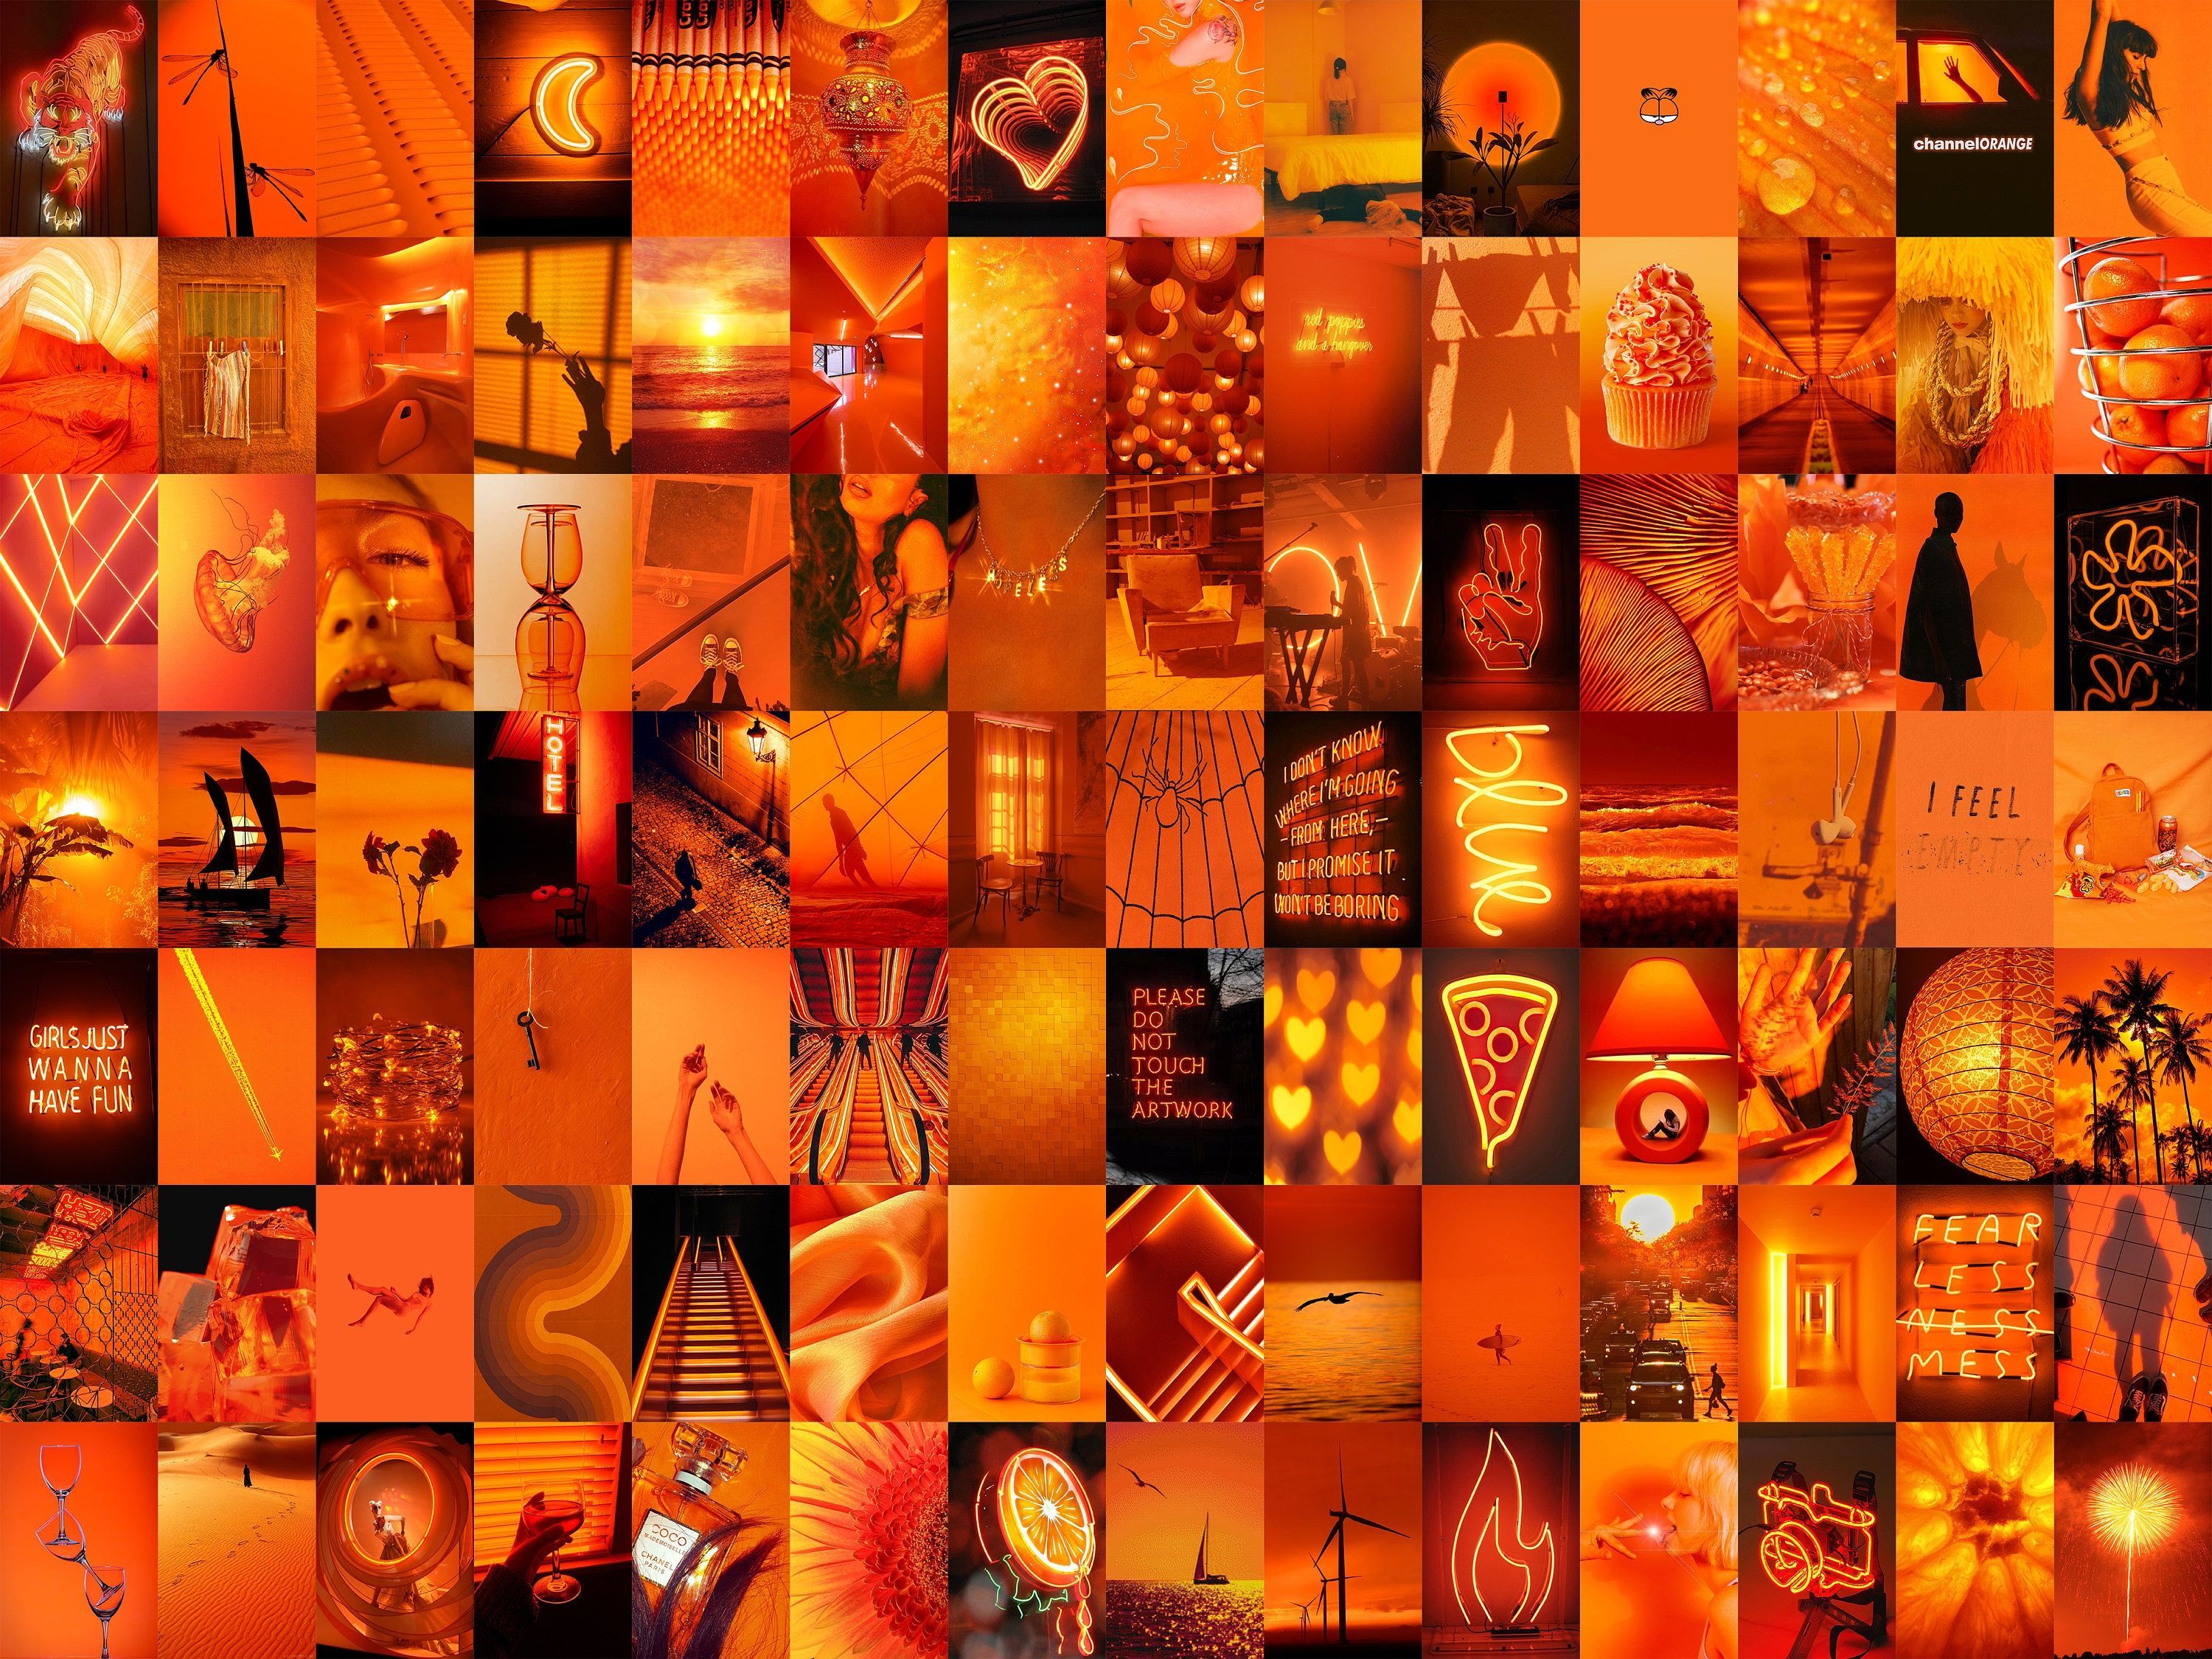 PCS Neon Orange Wall Collage Kit Boujee Orange Neon